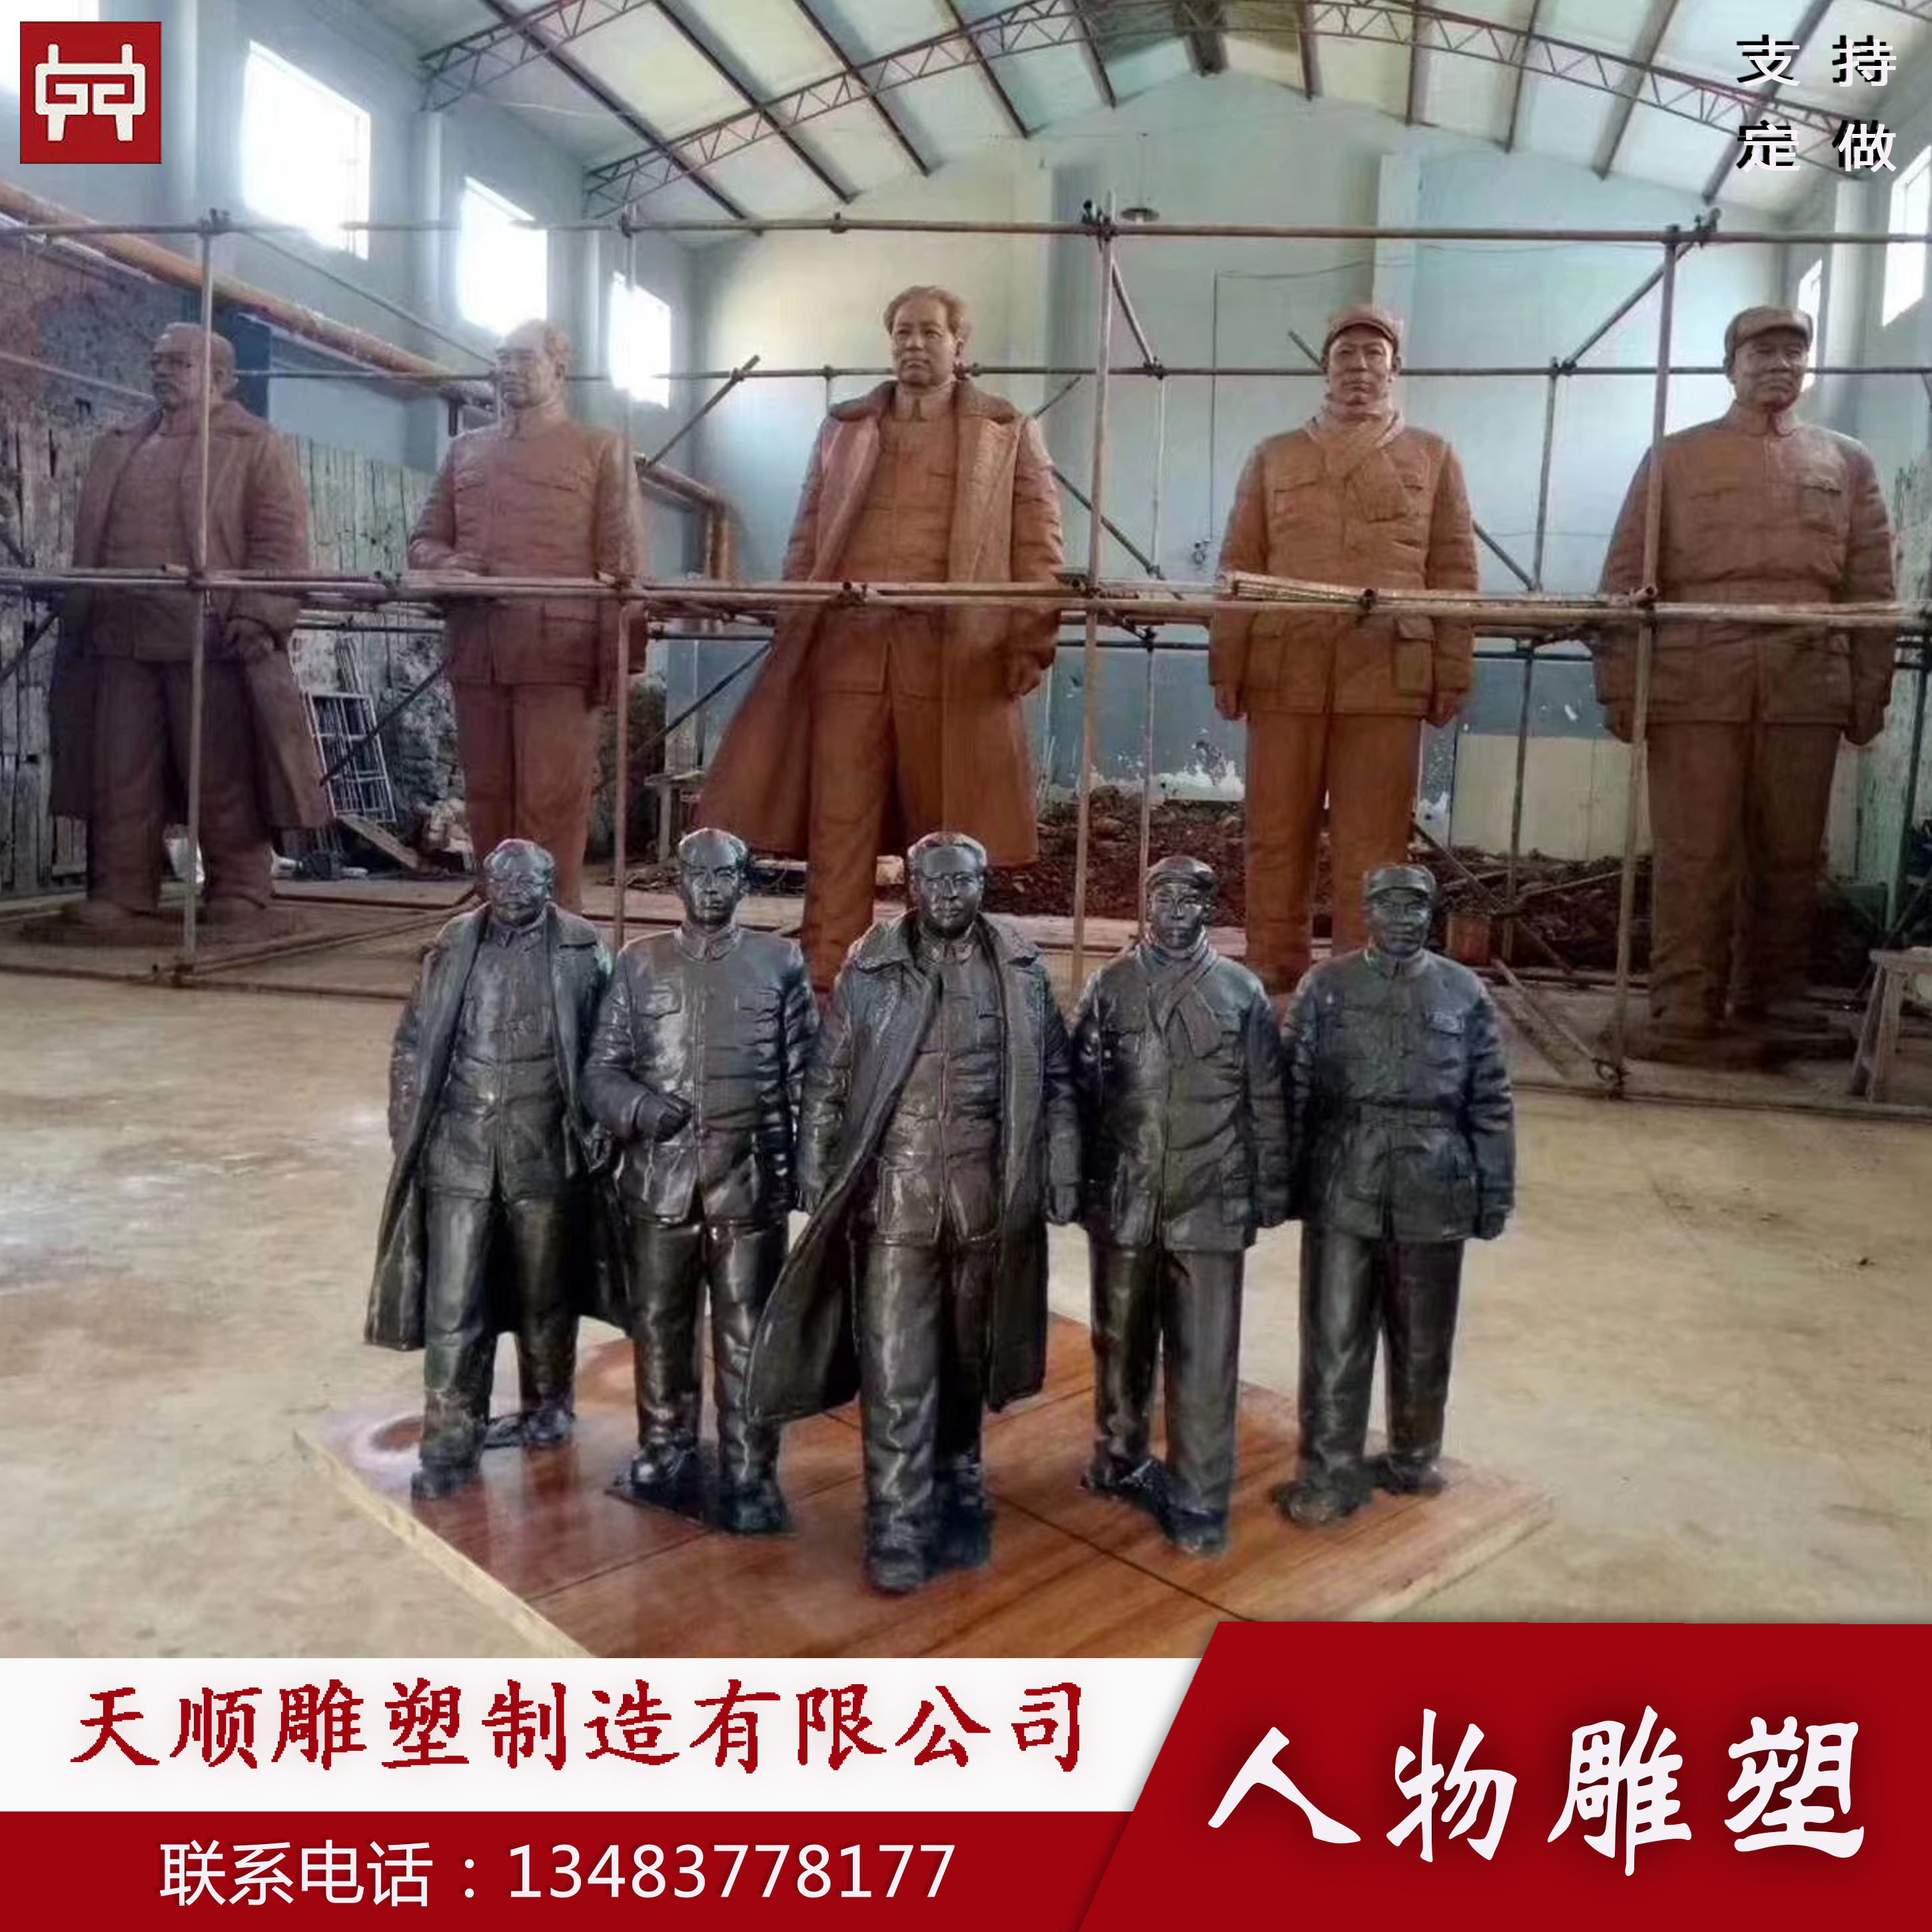 毛主席伟人铜像制作厂家河北天顺雕塑